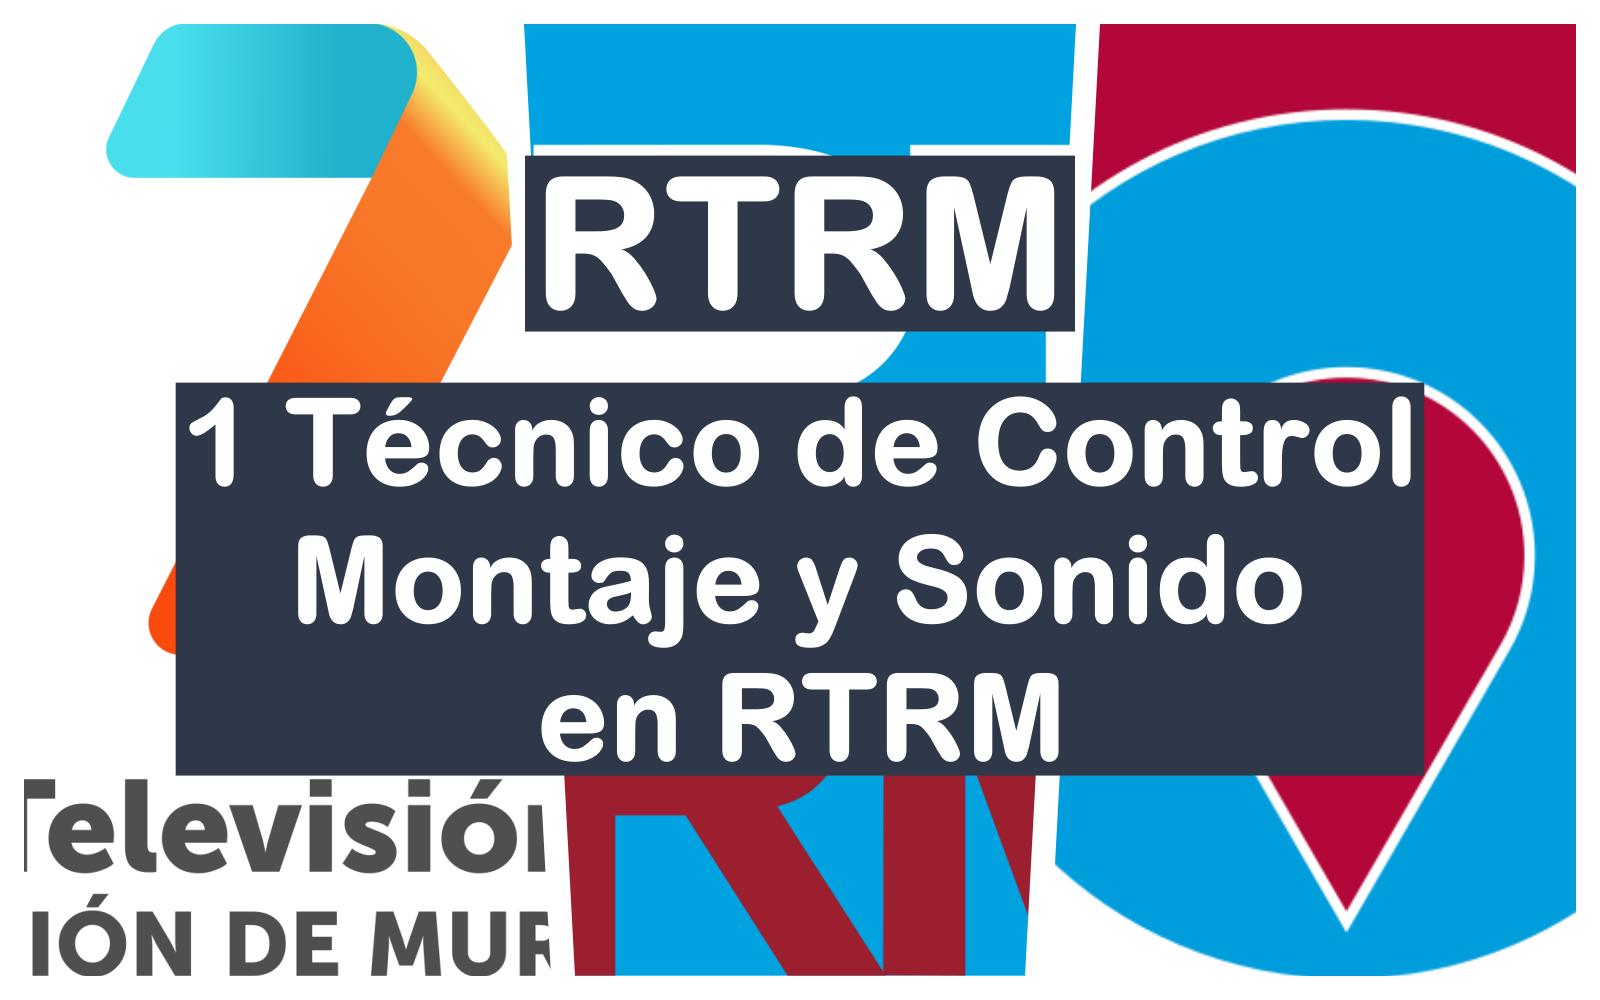 1 Técnico de Control Montaje y Sonido en RTRM